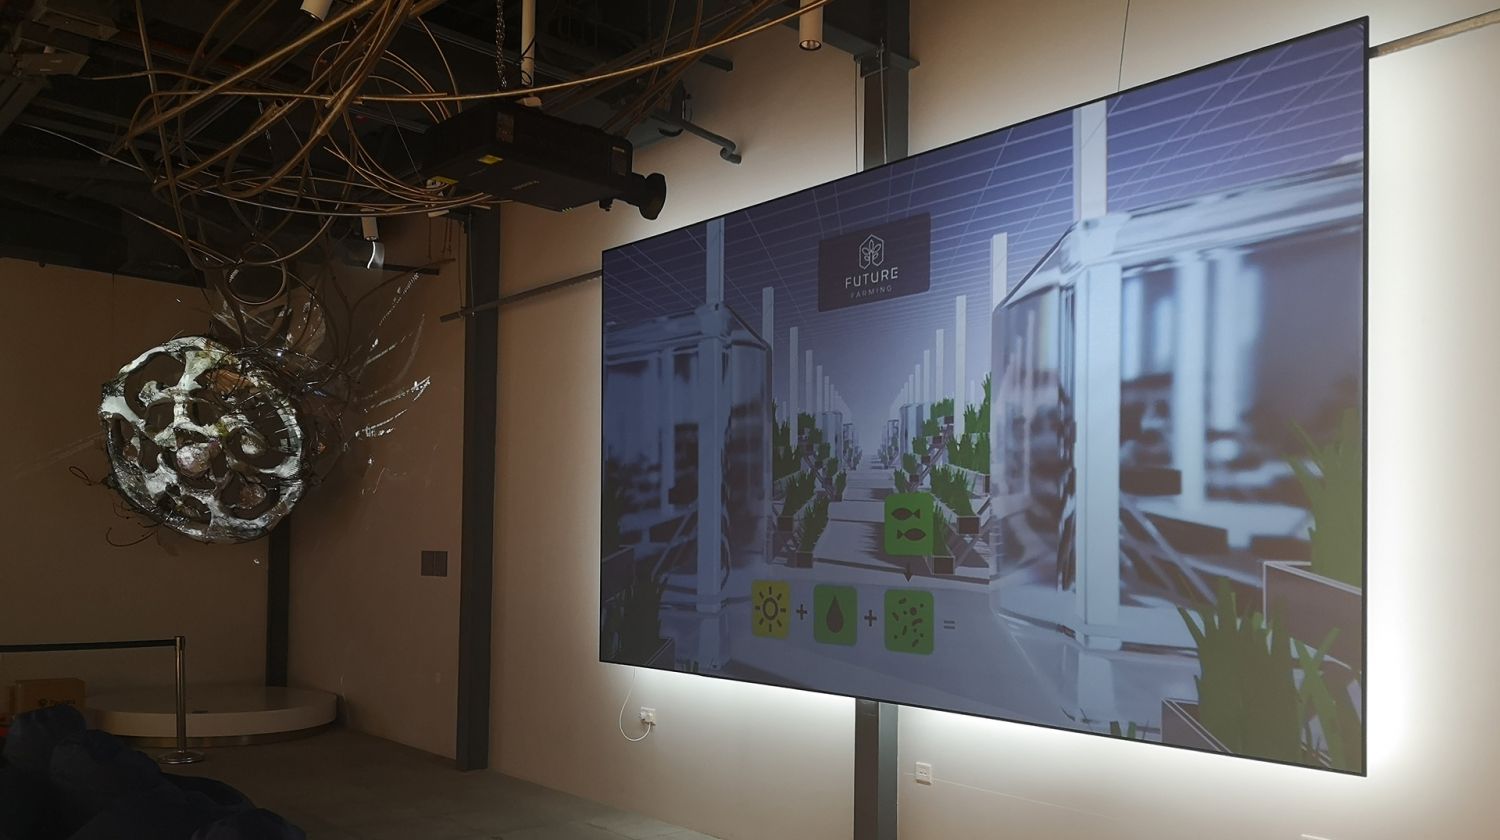 Skončila expozice Future Farming na výstavě EXPO Dubai